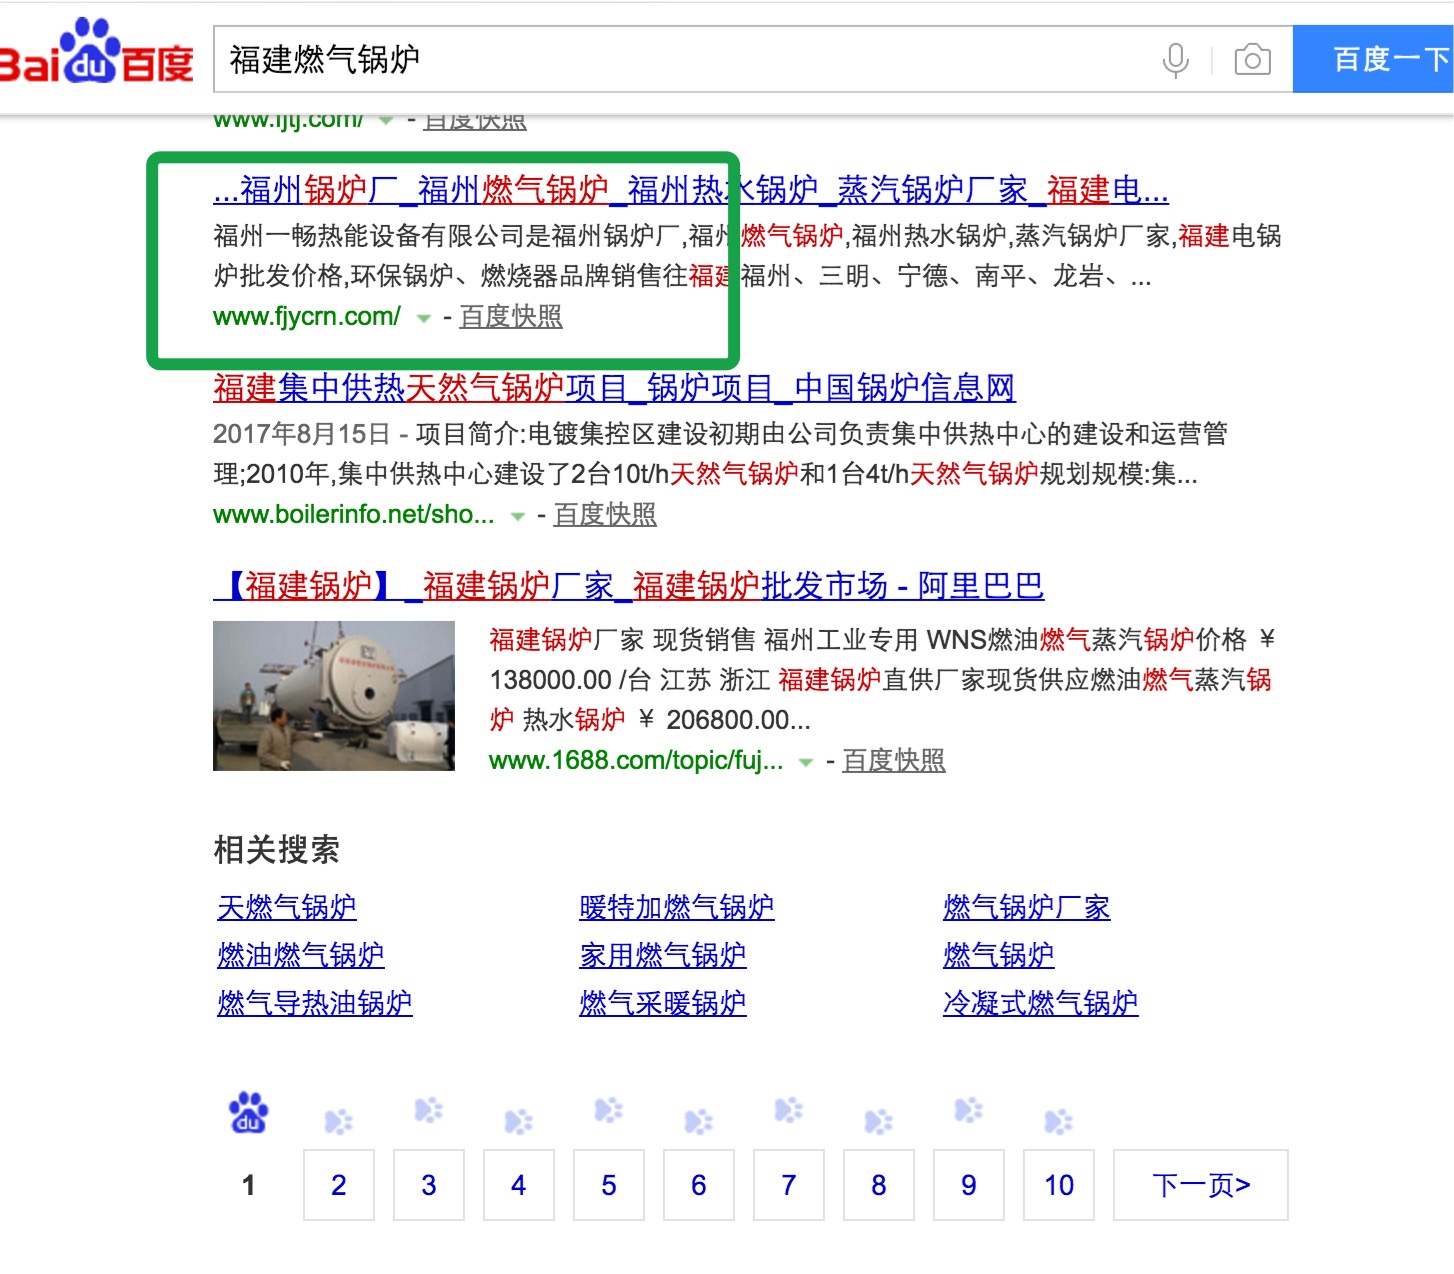 福州锅炉厂全新域名全新网站上线使用富海seo推广软件仅1天关键词排名超牛